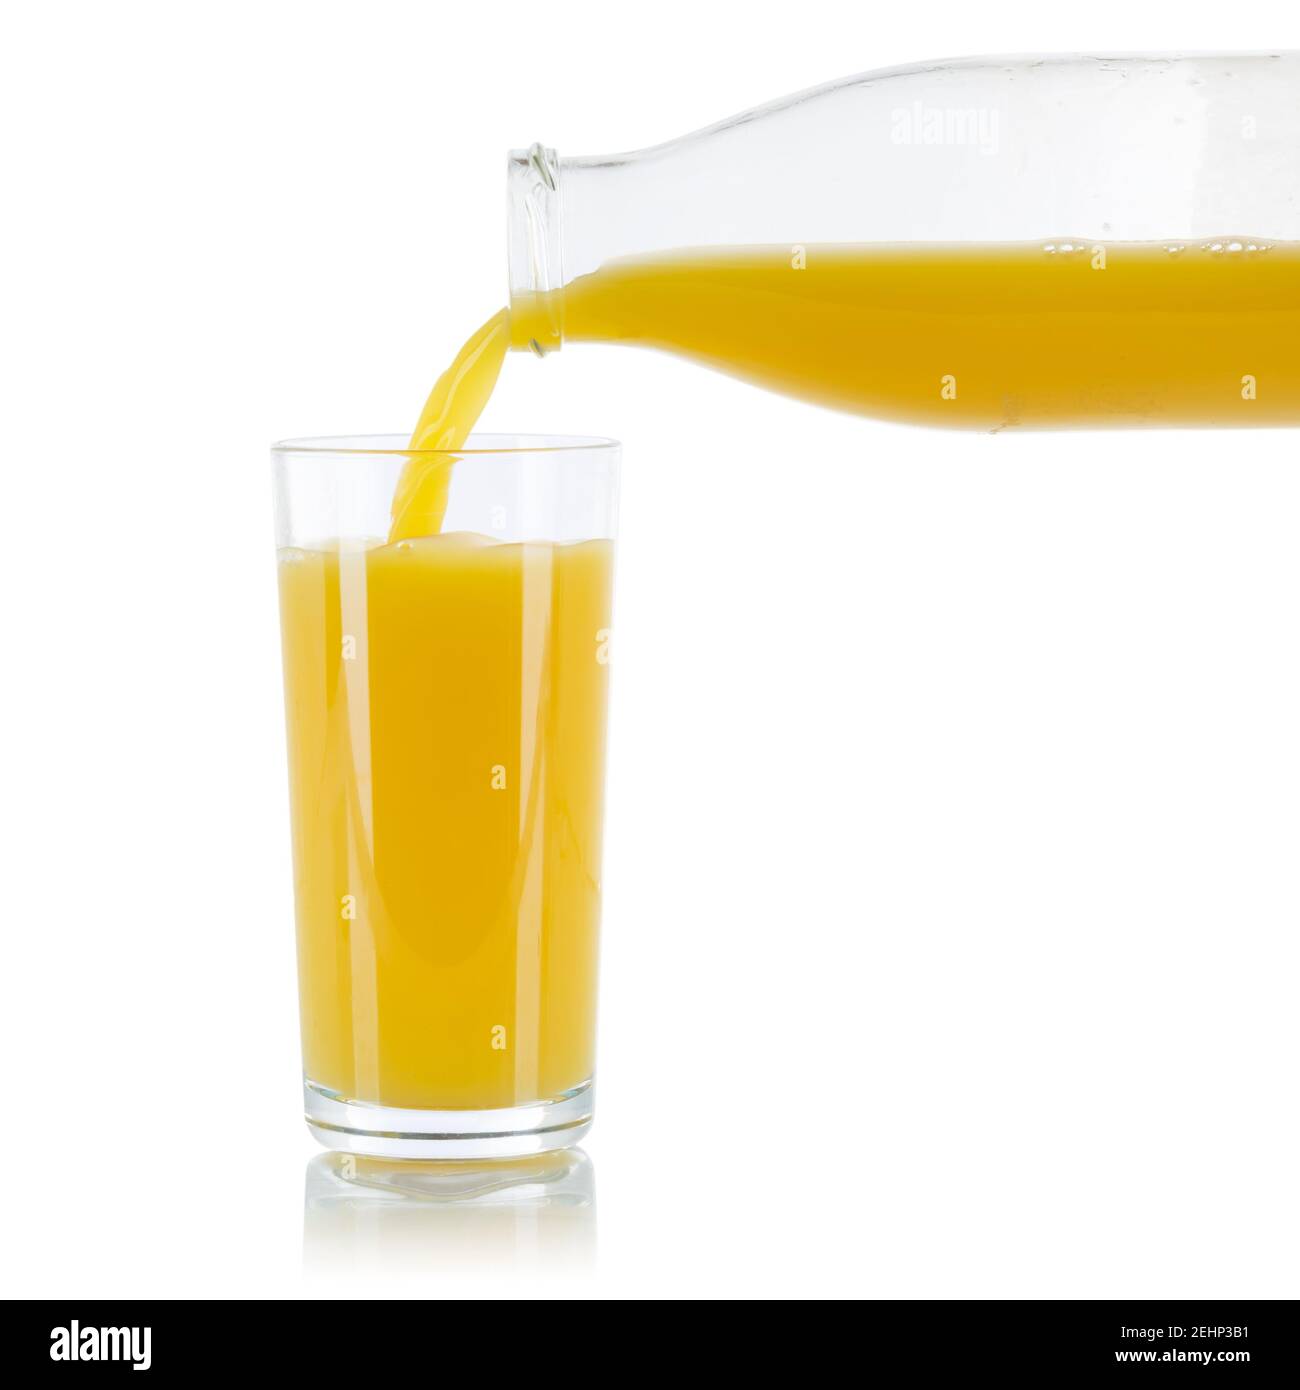 Orange juice pouring oranges fruit fruits glass bottle square isolated on a white background Stock Photo